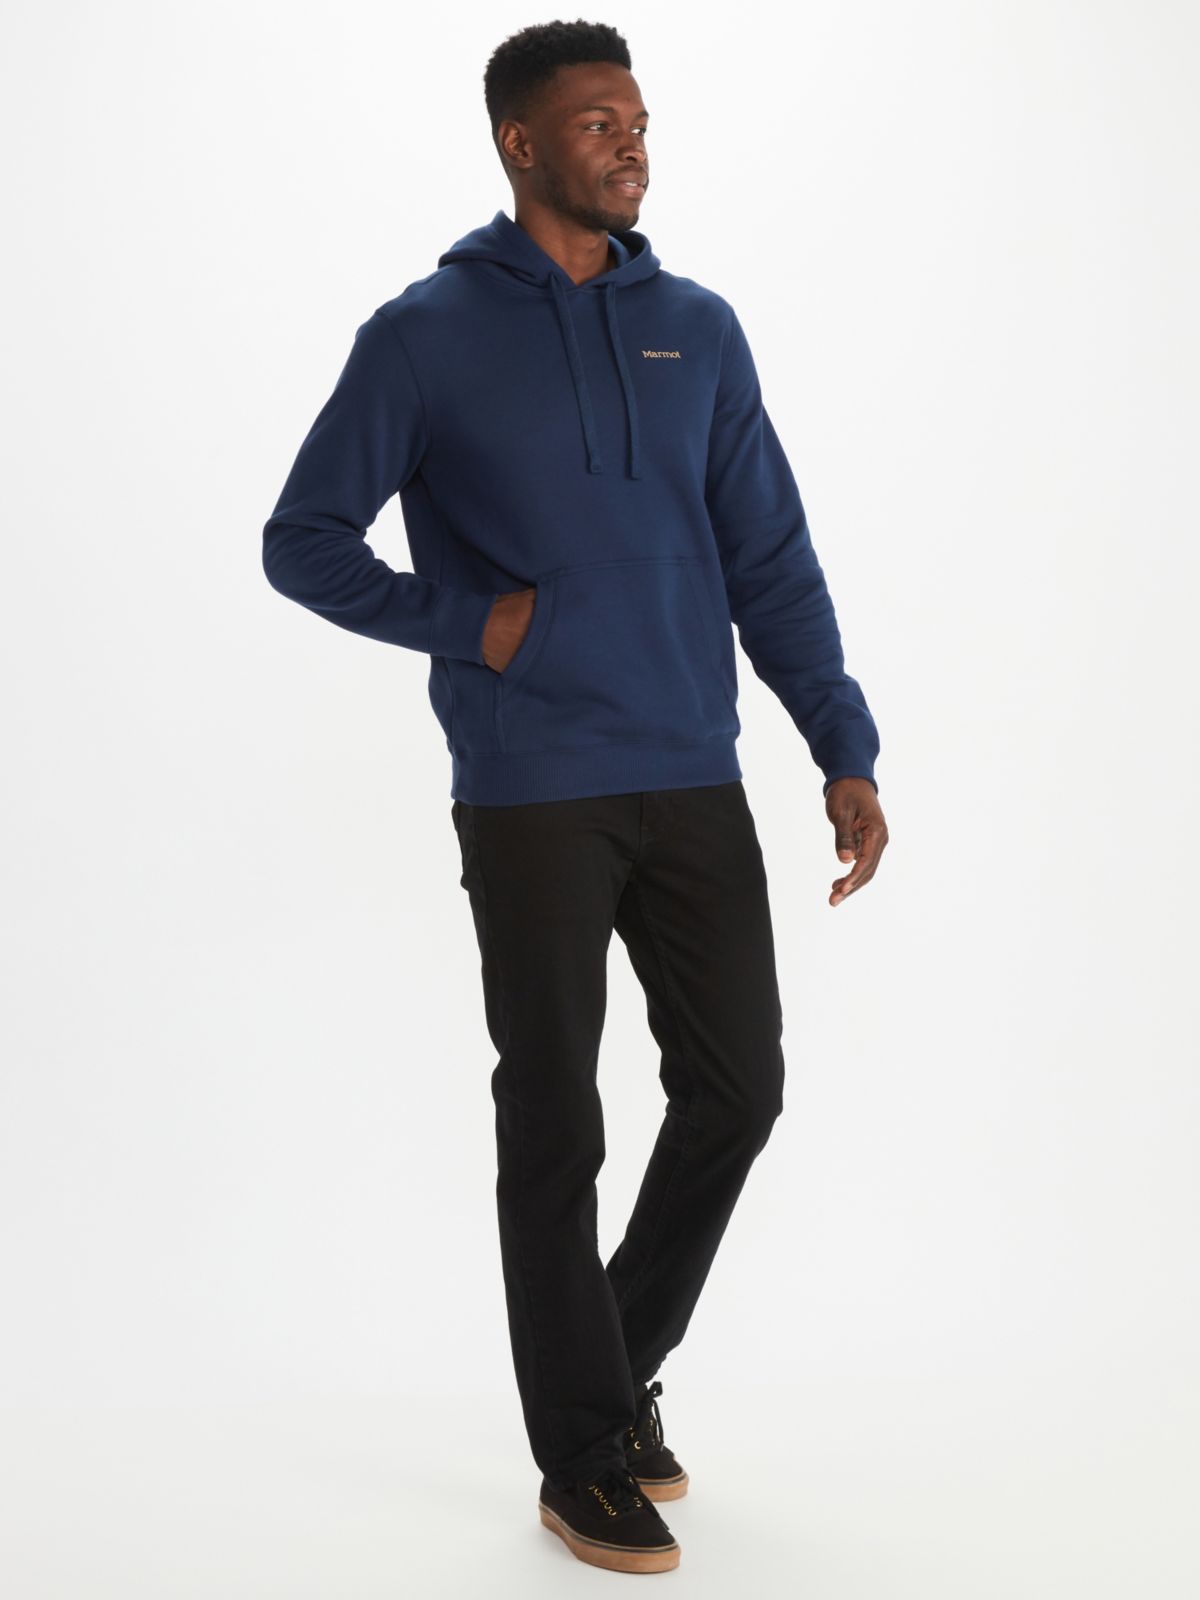 Men's sweatshirt and outdoor pants on model